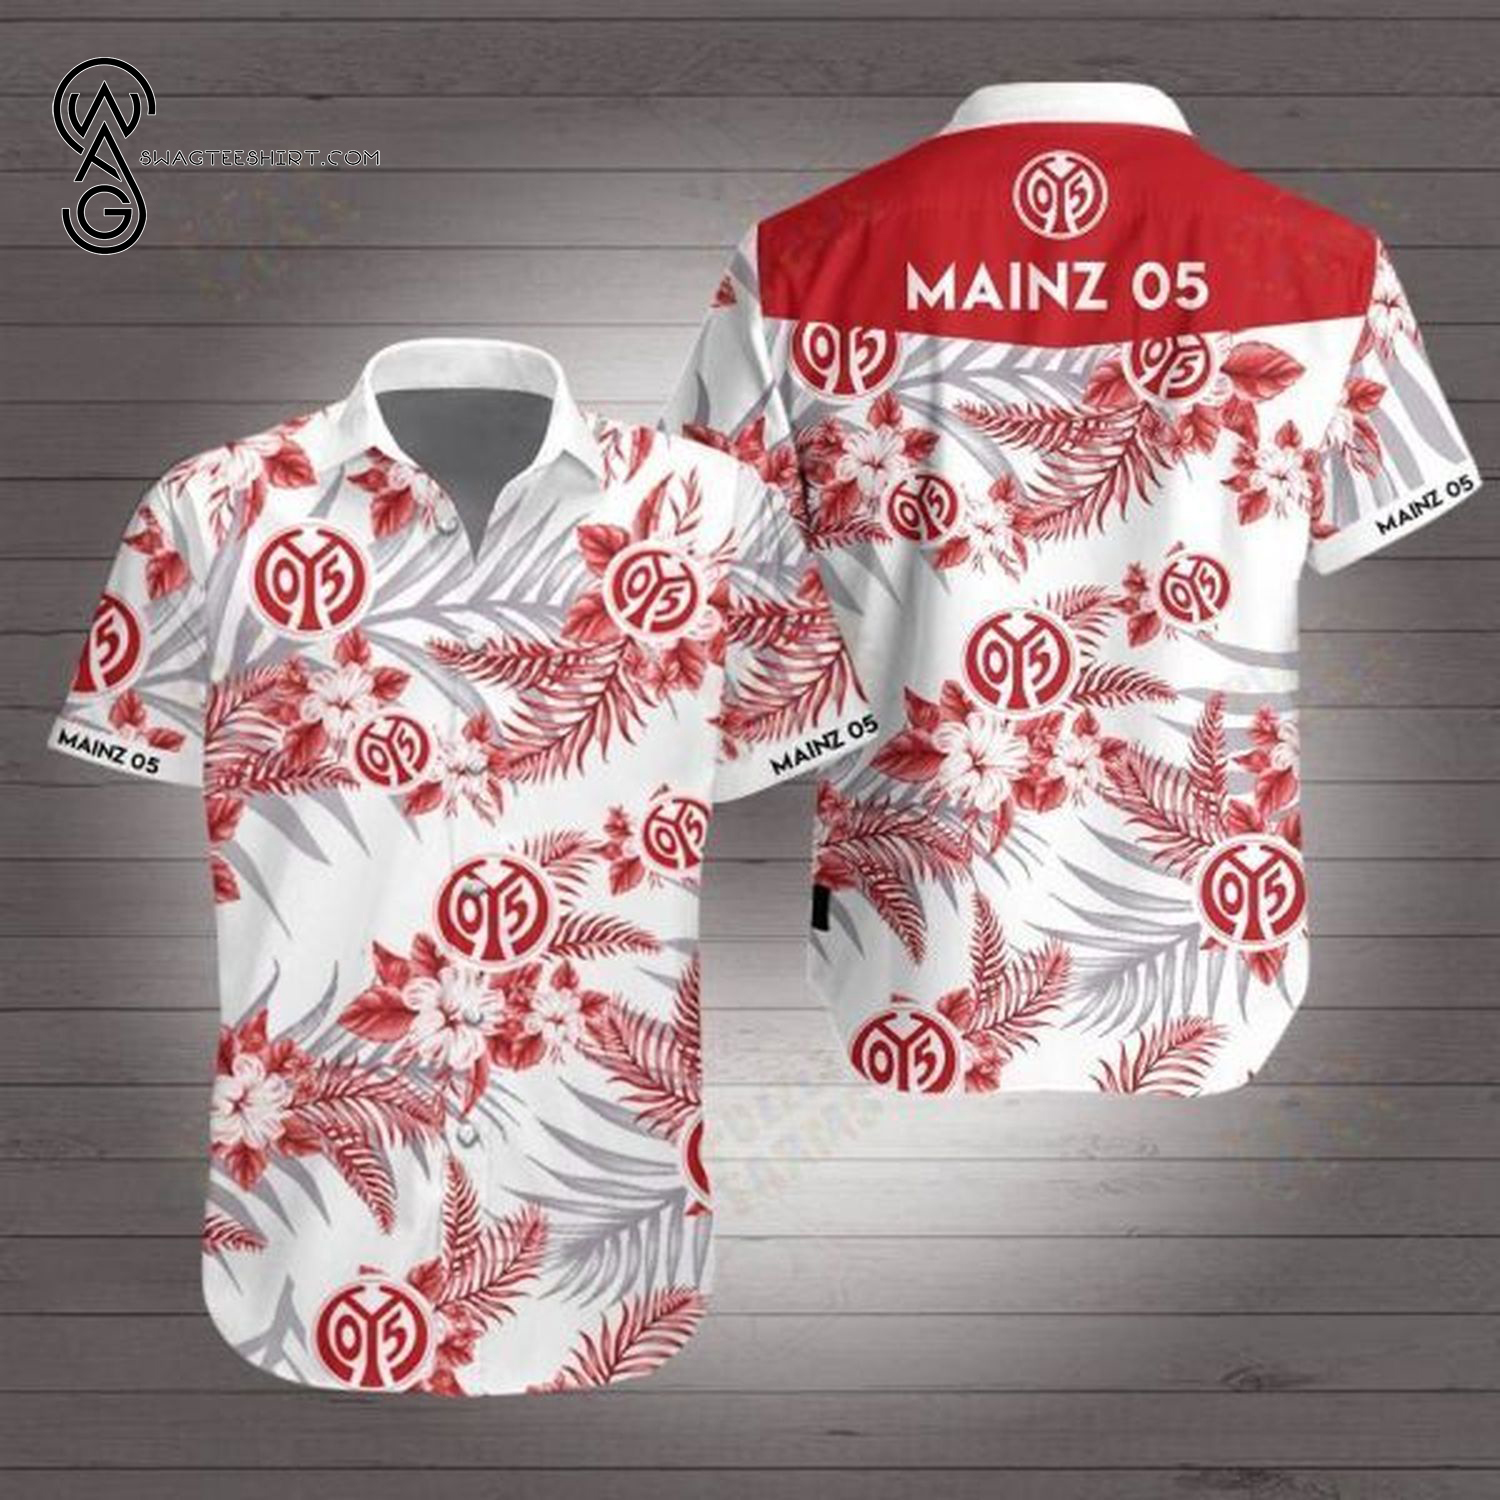 Mainz 05 Football Club Hawaiian Shirt